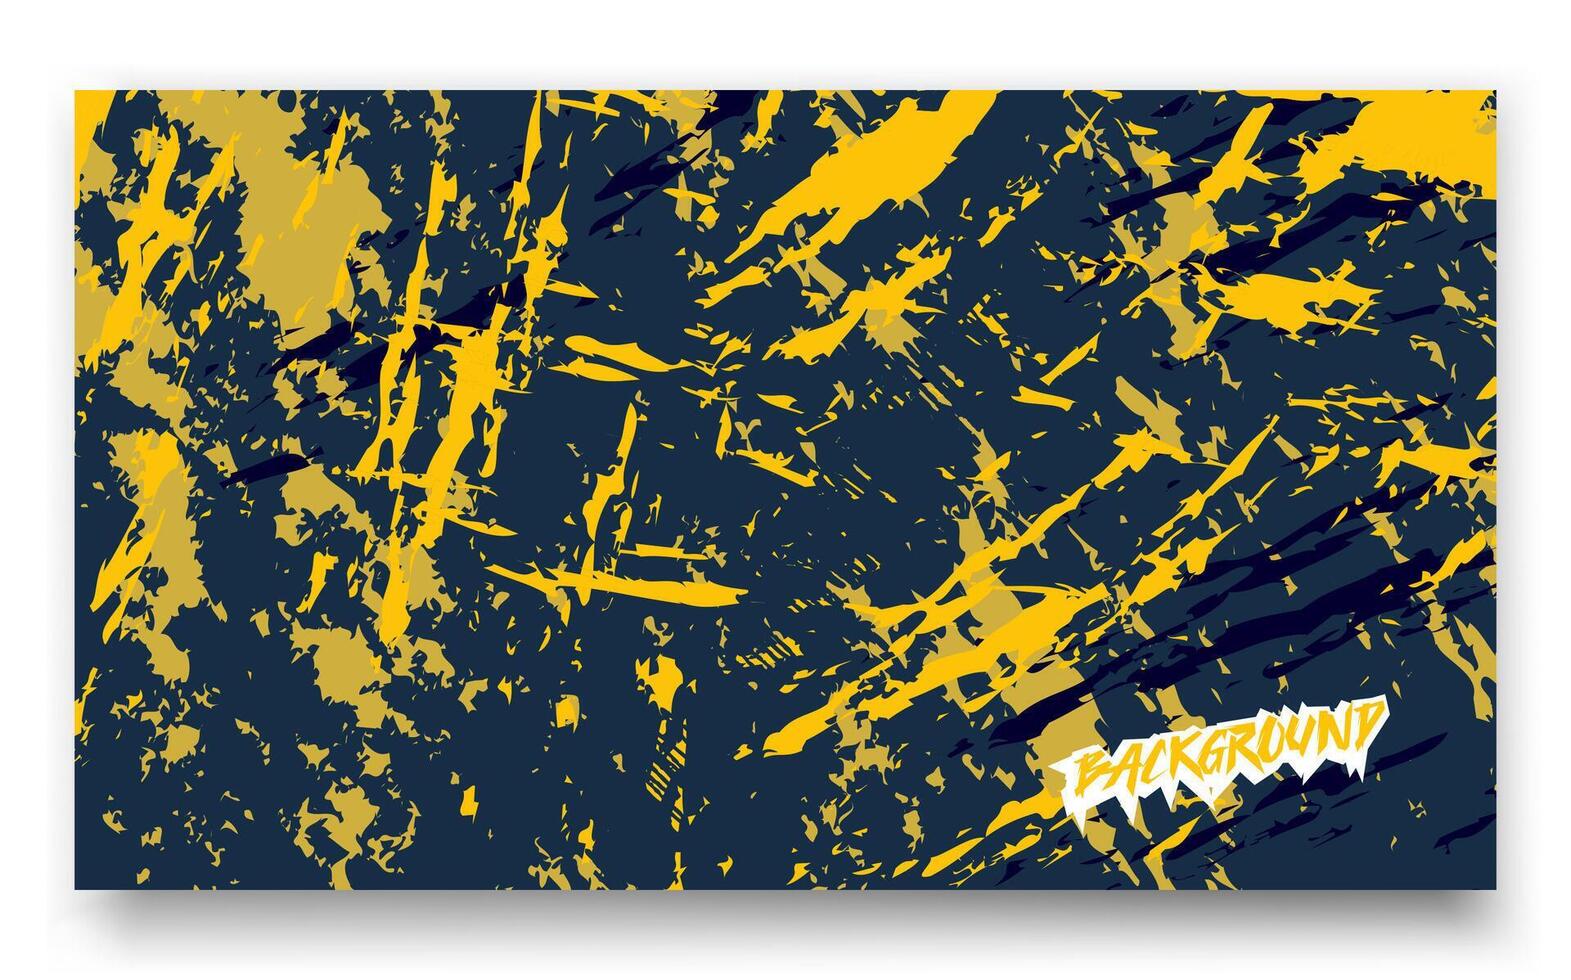 Gelb und schwarz Farbe Spritzer Hintergrund geeignet zum Grunge Design, Kunst, abstrakt Konzept, Musik- Veranstaltungen, und städtisch thematisch Grafik. vektor